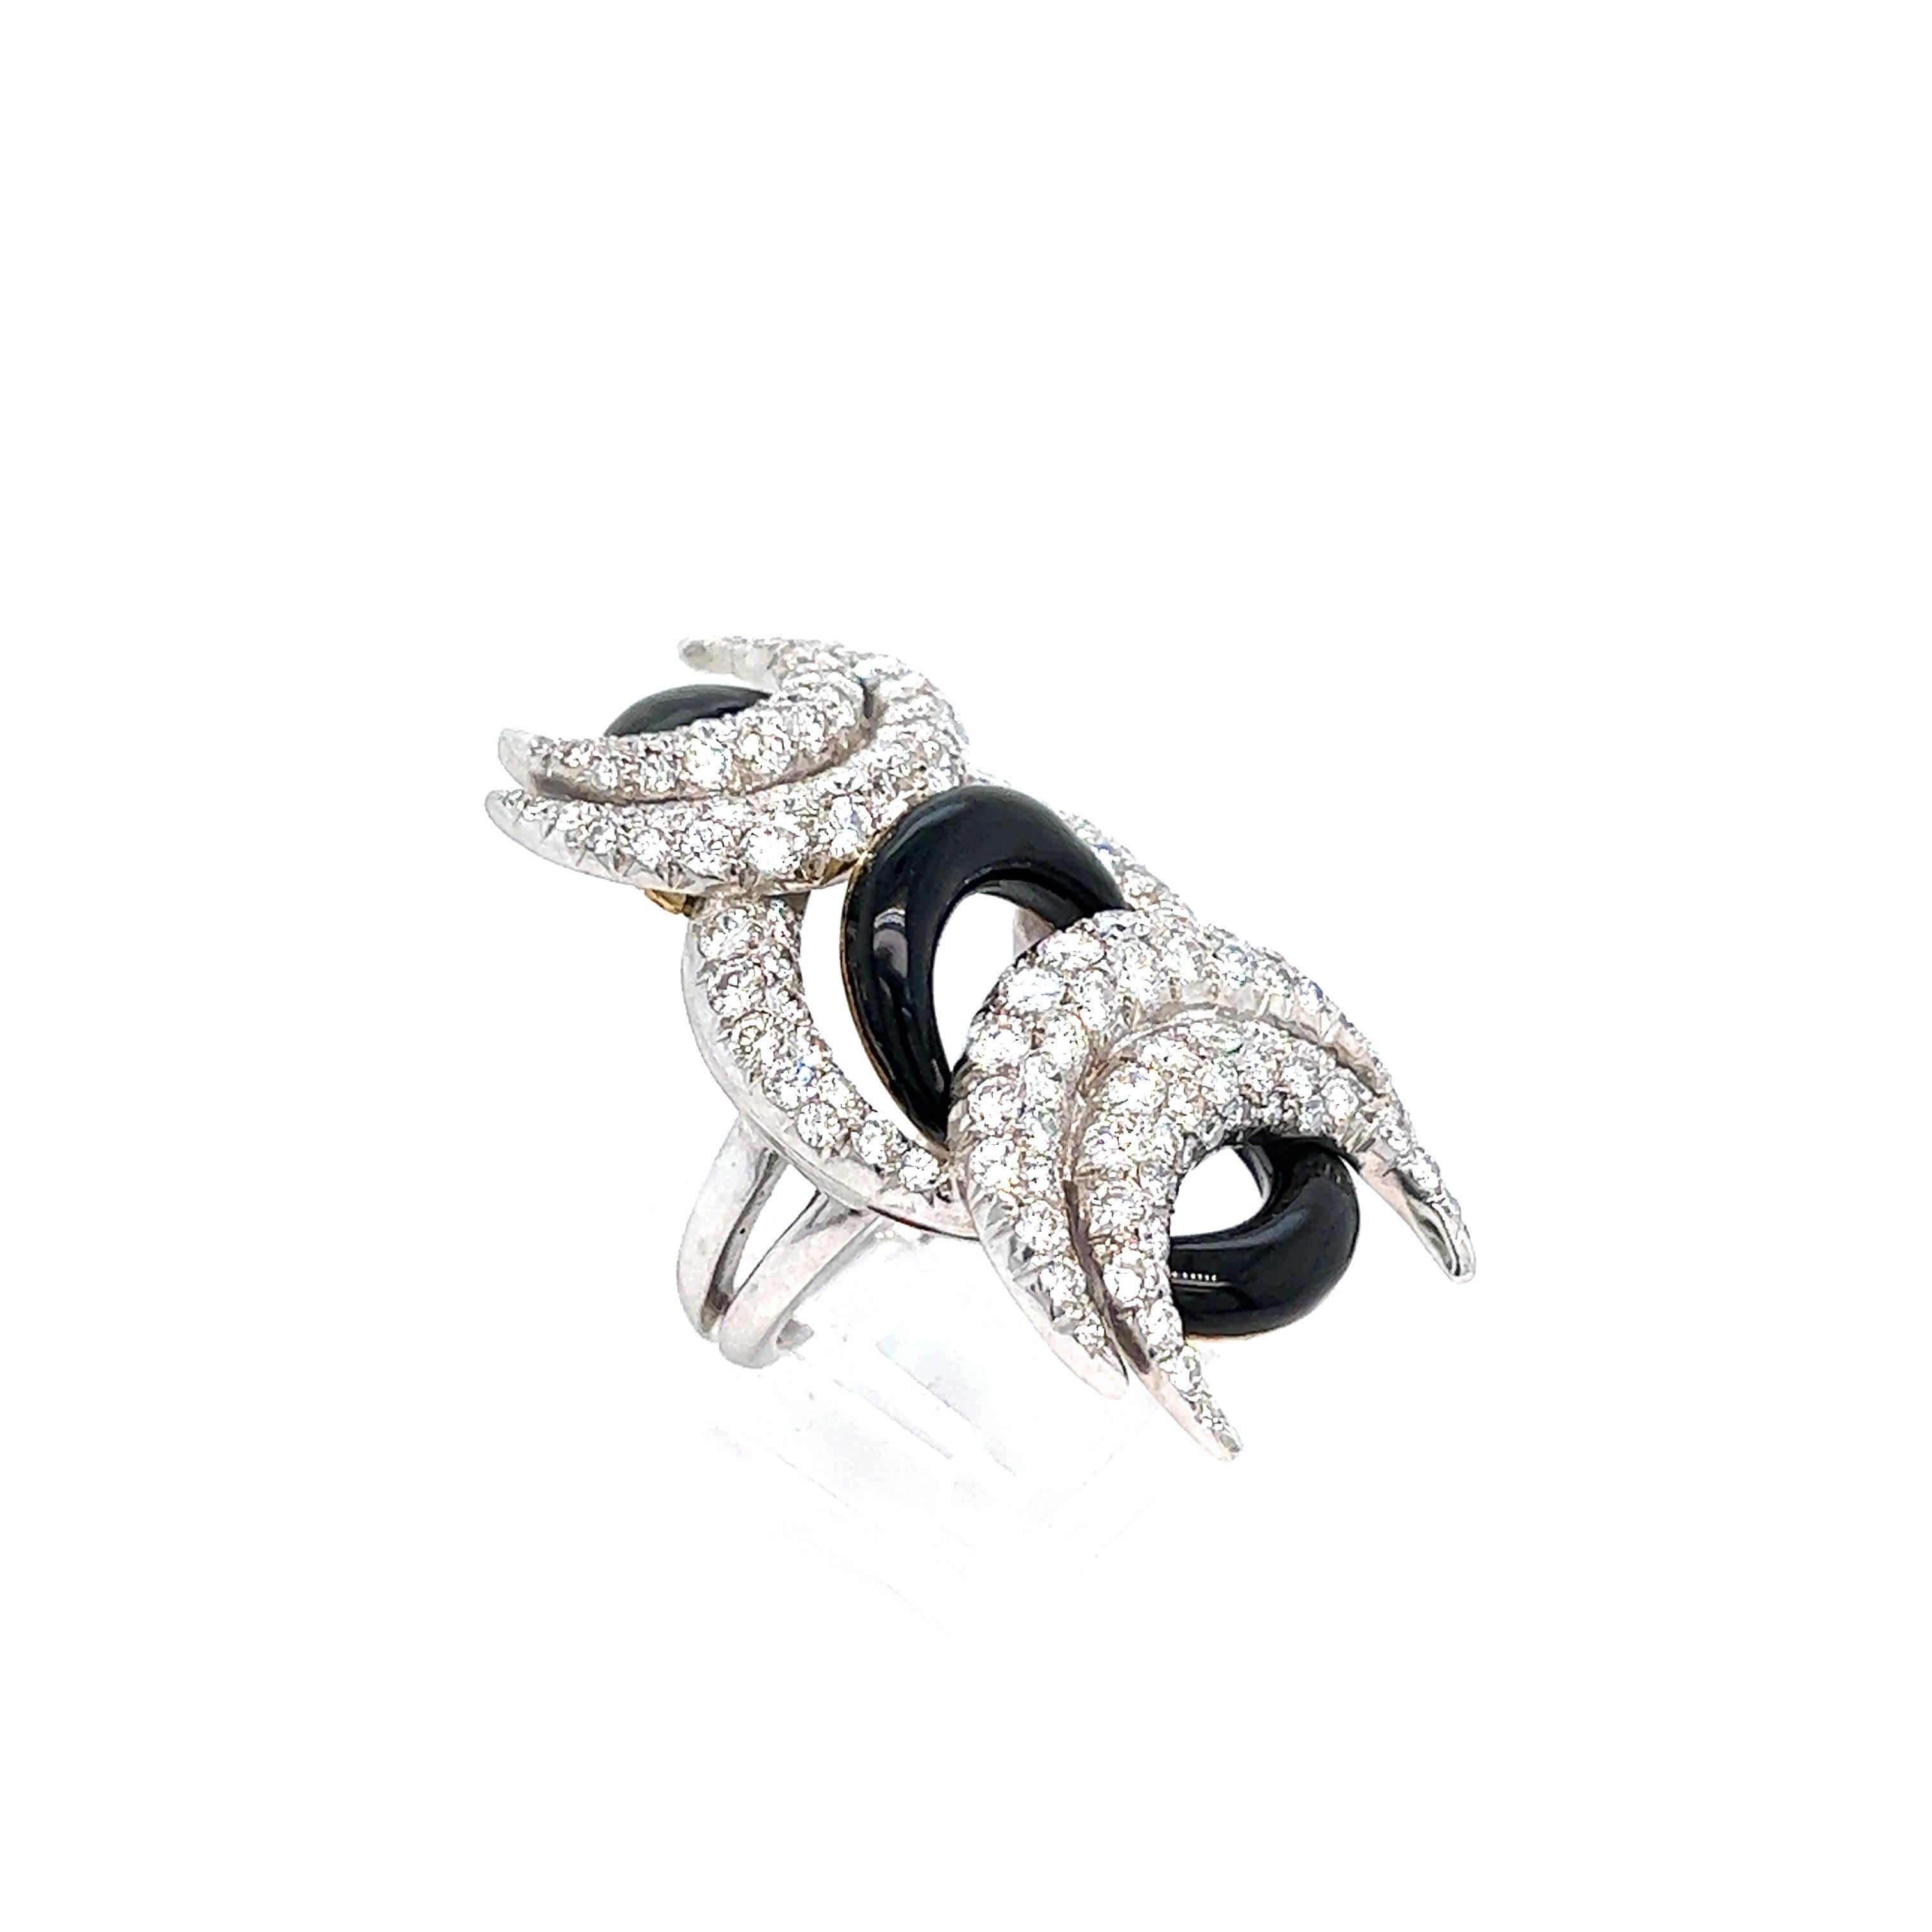 Cartier Mondsichel Diamant Schwarz Onyx Ring

18 Karat Weißgold und Platin, mit Halbmond-Design; fünf der acht Monde bestehen aus Diamanten mit einem Gewicht von ca. 3,5 Karat, die übrigen drei aus schwarzem Onyx; mit Cartier bezeichnet

Größe: